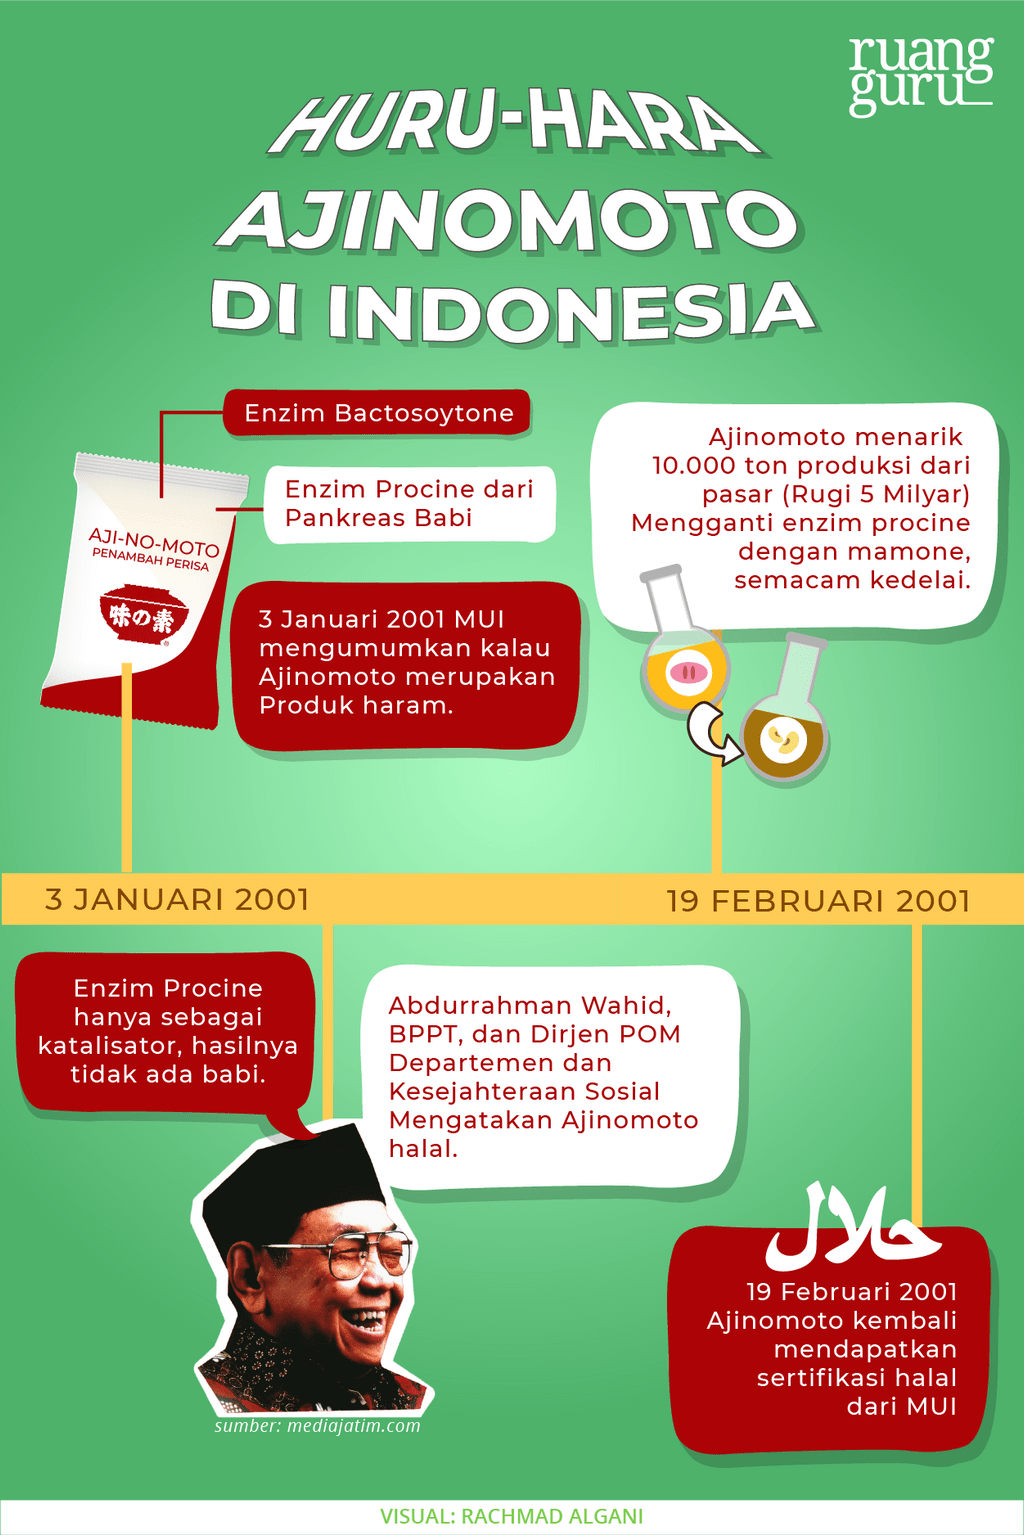 masalah micin ajinomoto di indonesia